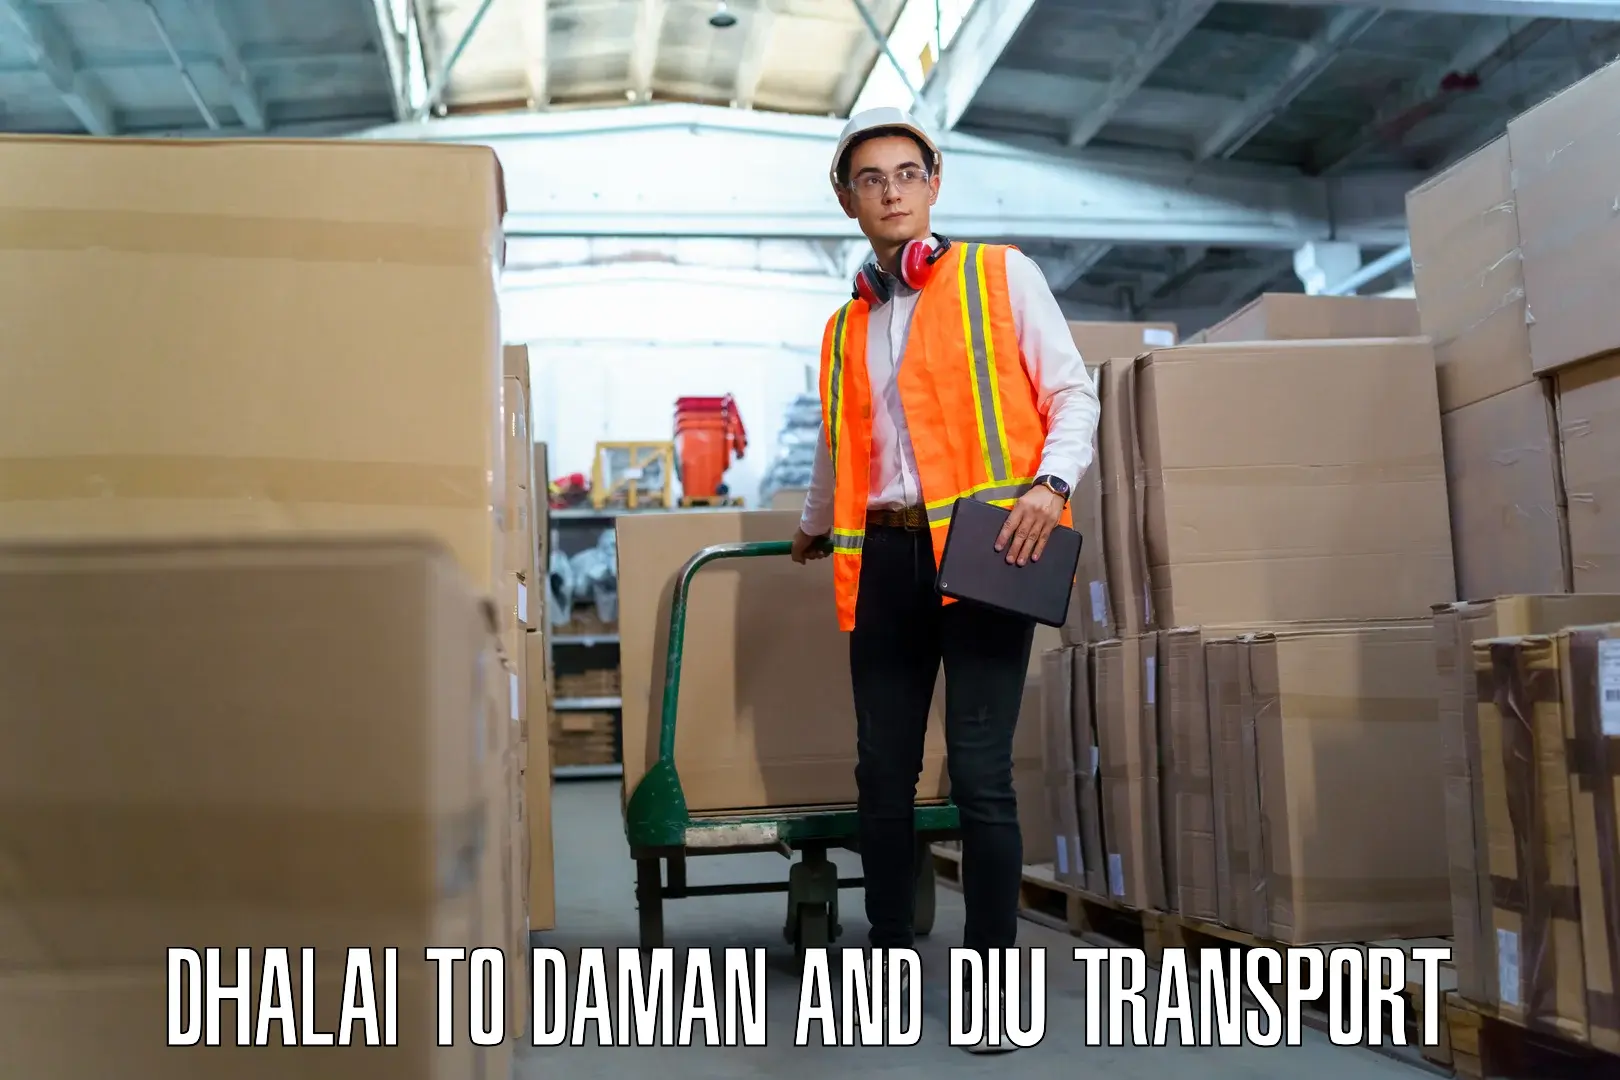 Shipping partner Dhalai to Daman